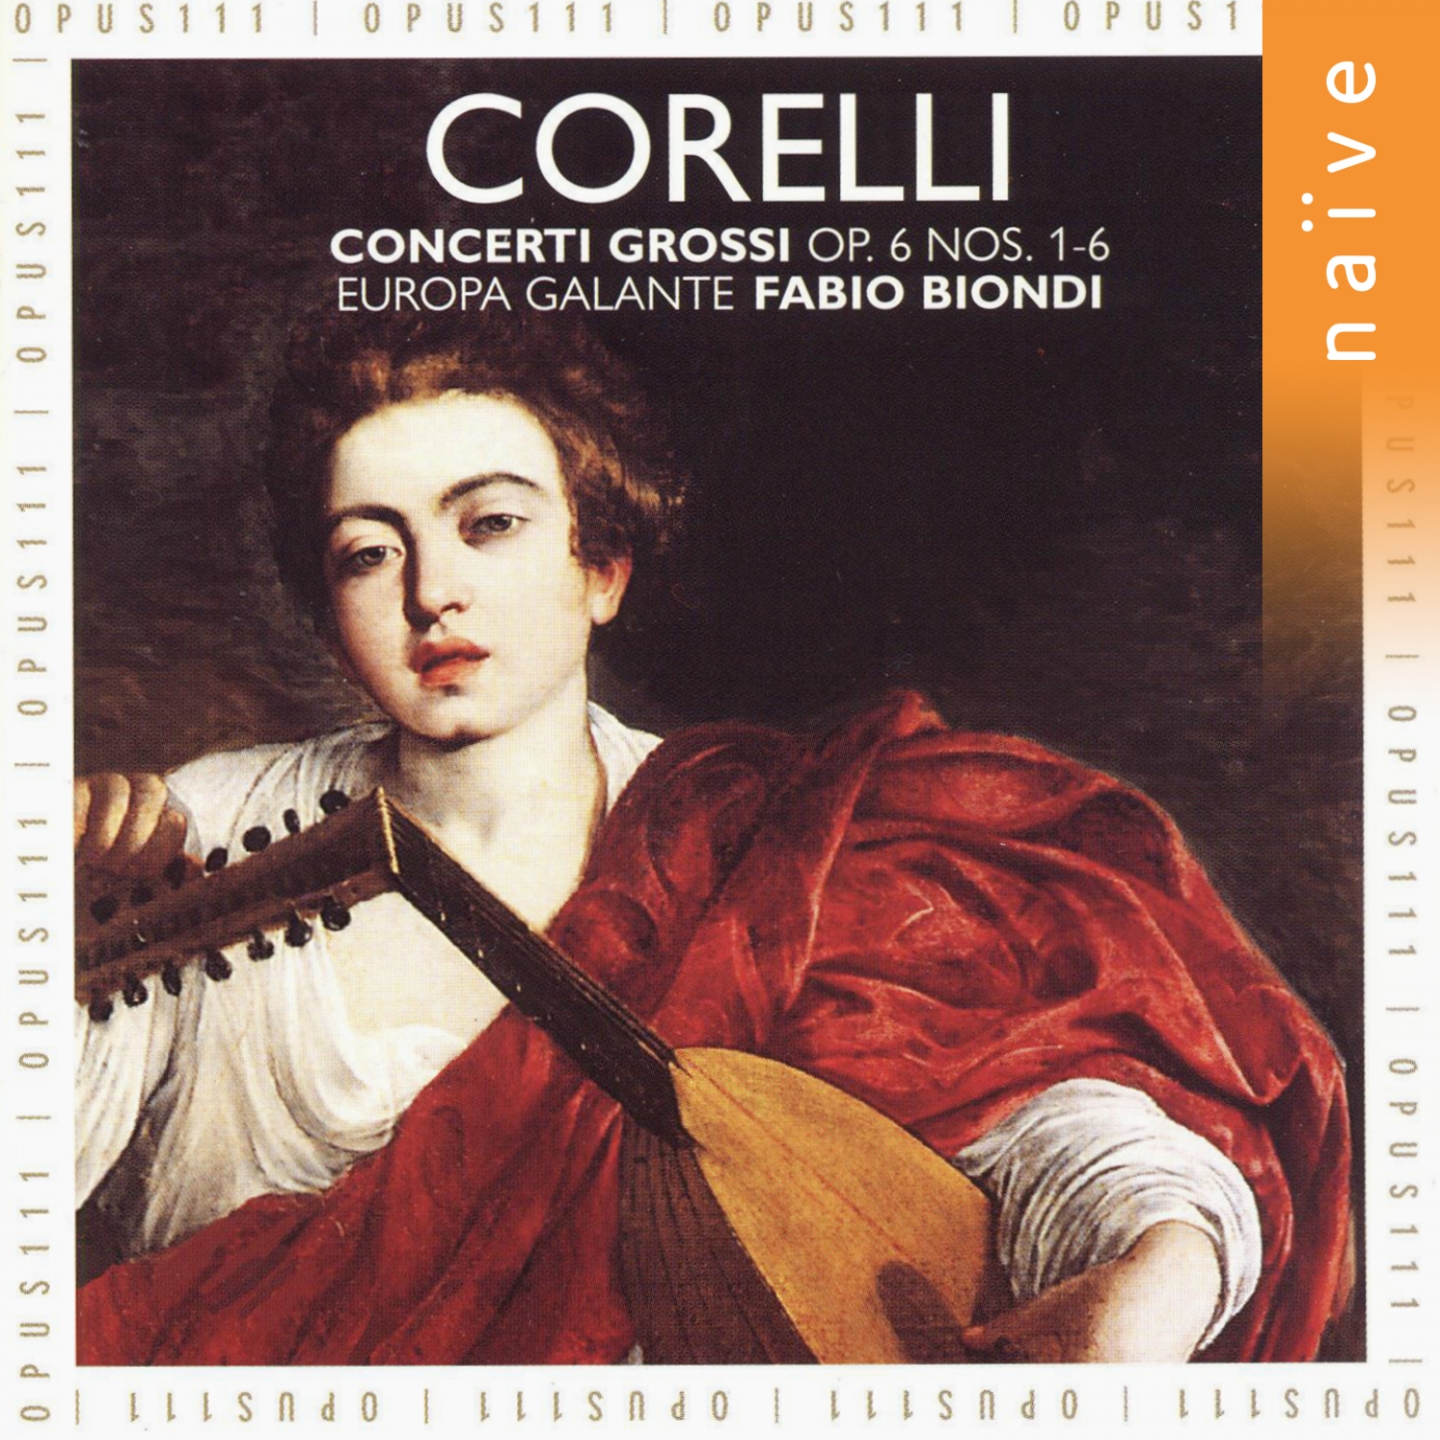 12 Concerti Grossi, Op. 6, No. 5 in B-Flat Major: III. Allegro - Adagio